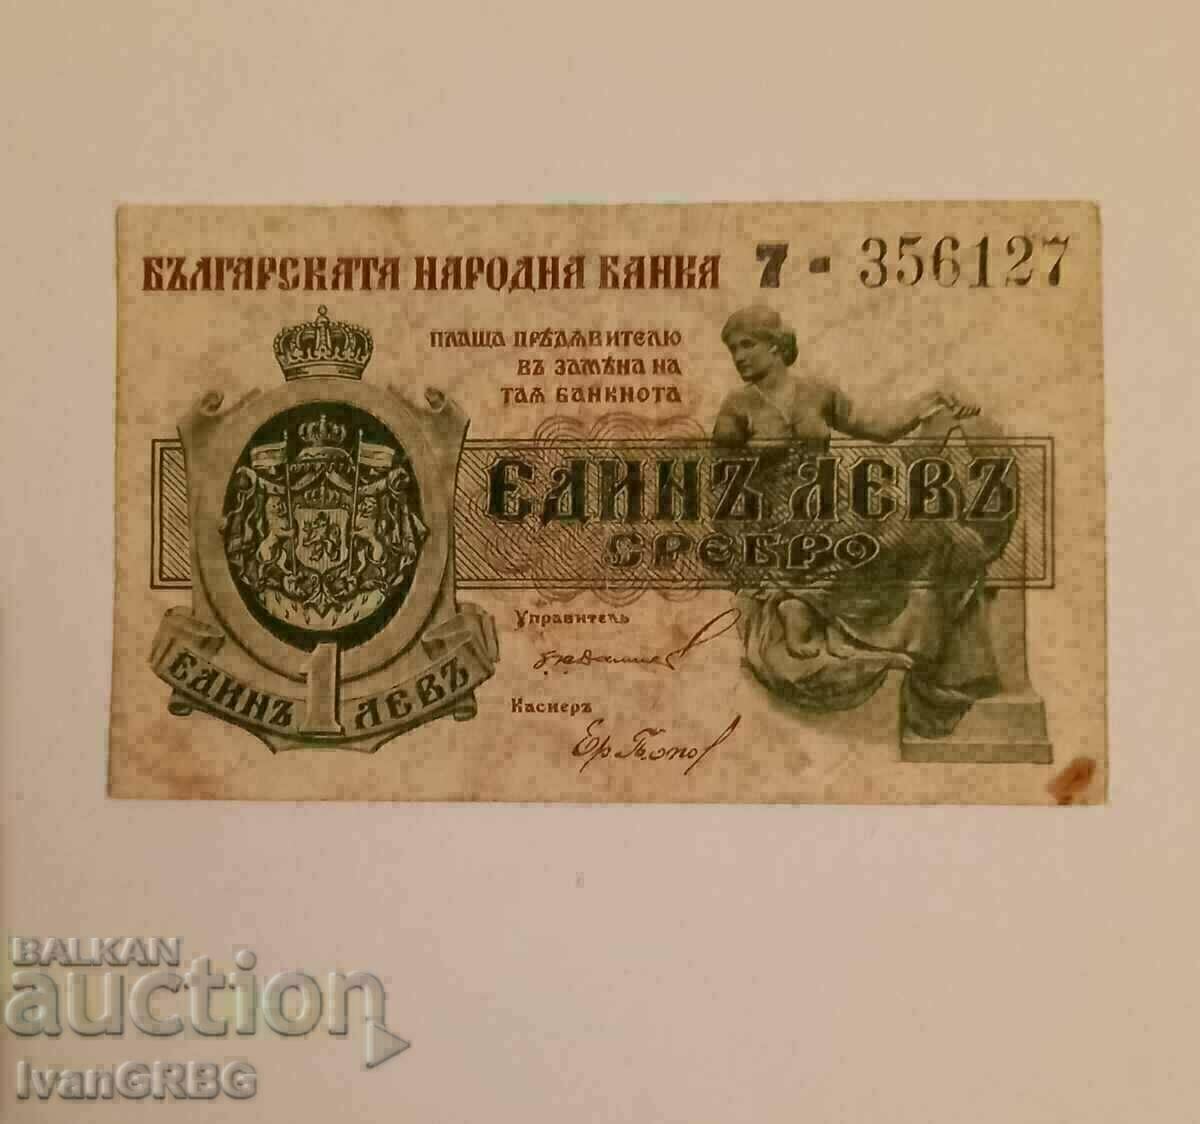 1 ασημένιο λεβ 1920 Kingdom of Bulgaria 7 ONE DIGIT